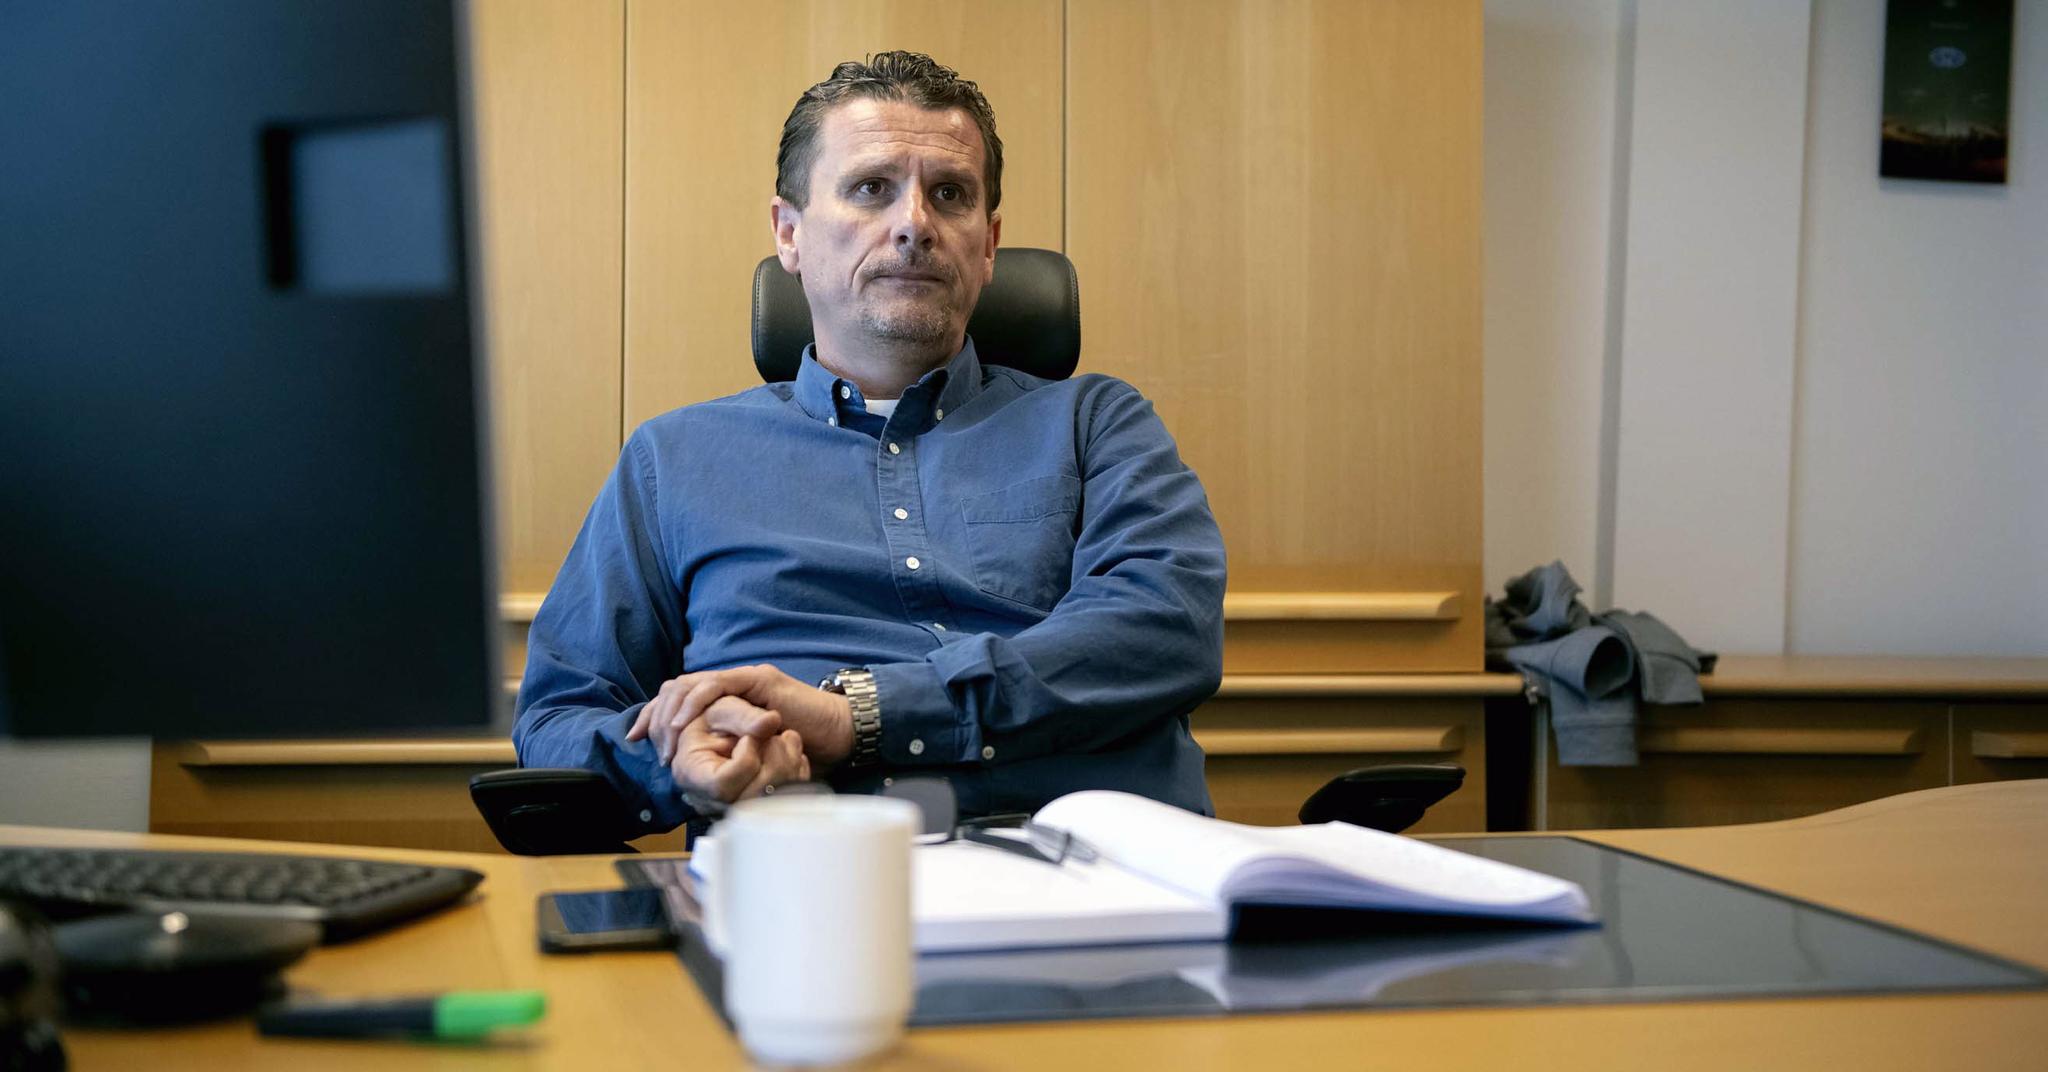 Administrerende direktør Ole Erik Stavrum har hatt en krevende tid på kontoret, men ser også flere lyspunkter for MFKs økonomi.